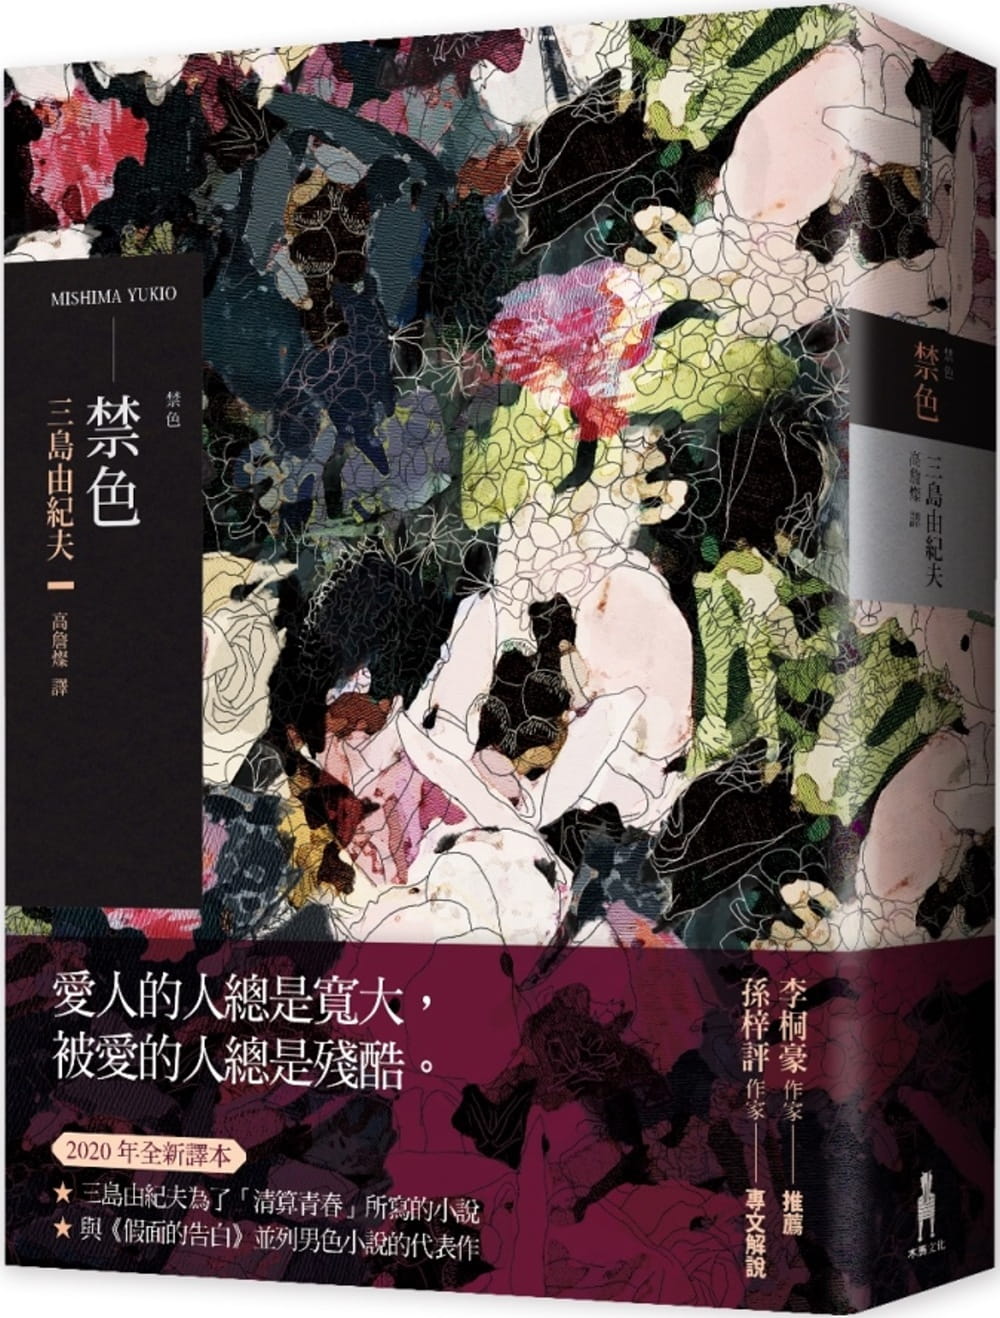 现货 三岛由纪夫禁色（2020年全新译本）木马文化 原版进口书 文学小说